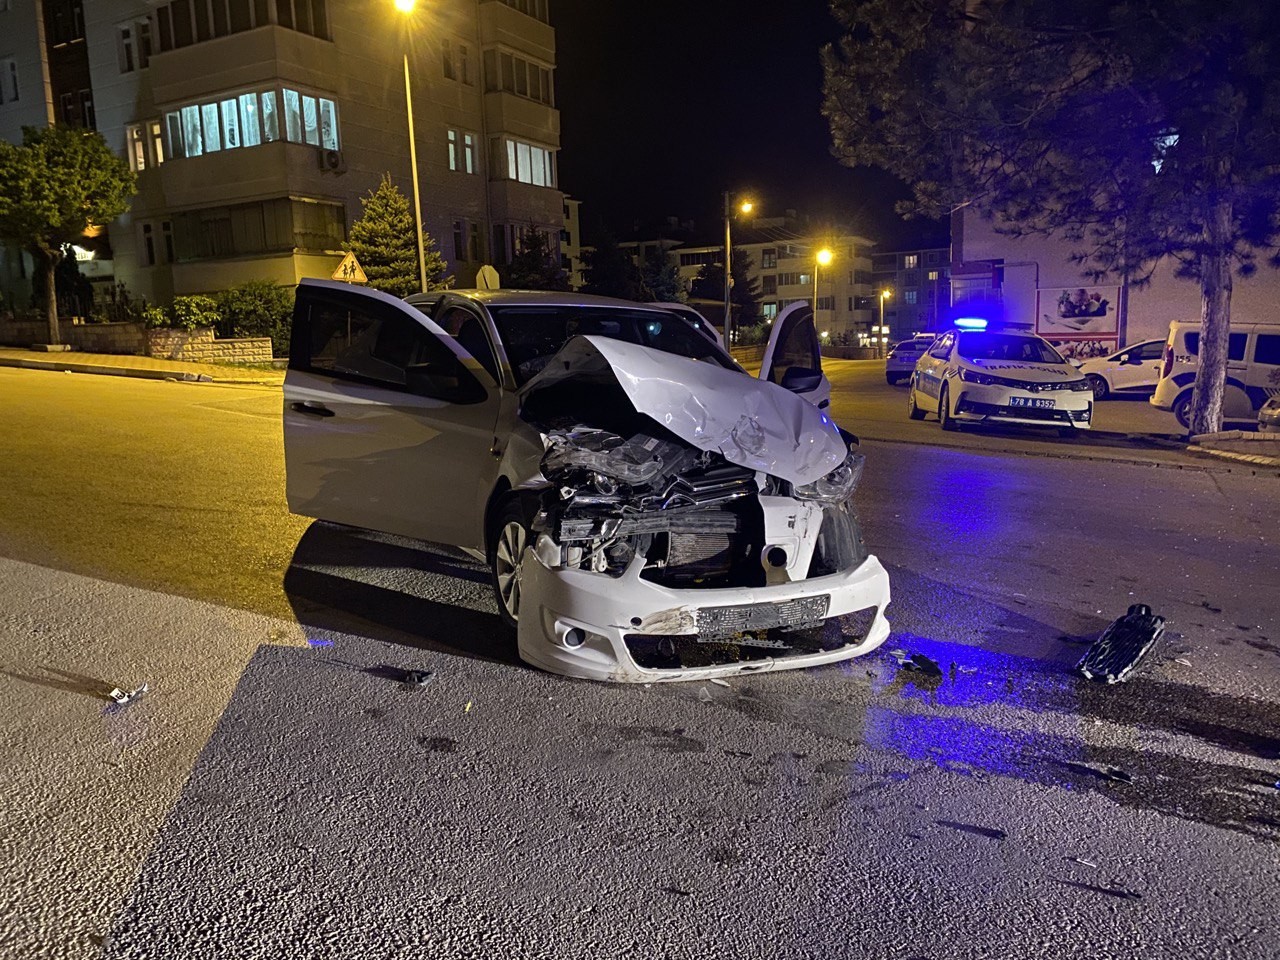 Safranbolu’da iki otomobil çarpıştı: 4 yaralı